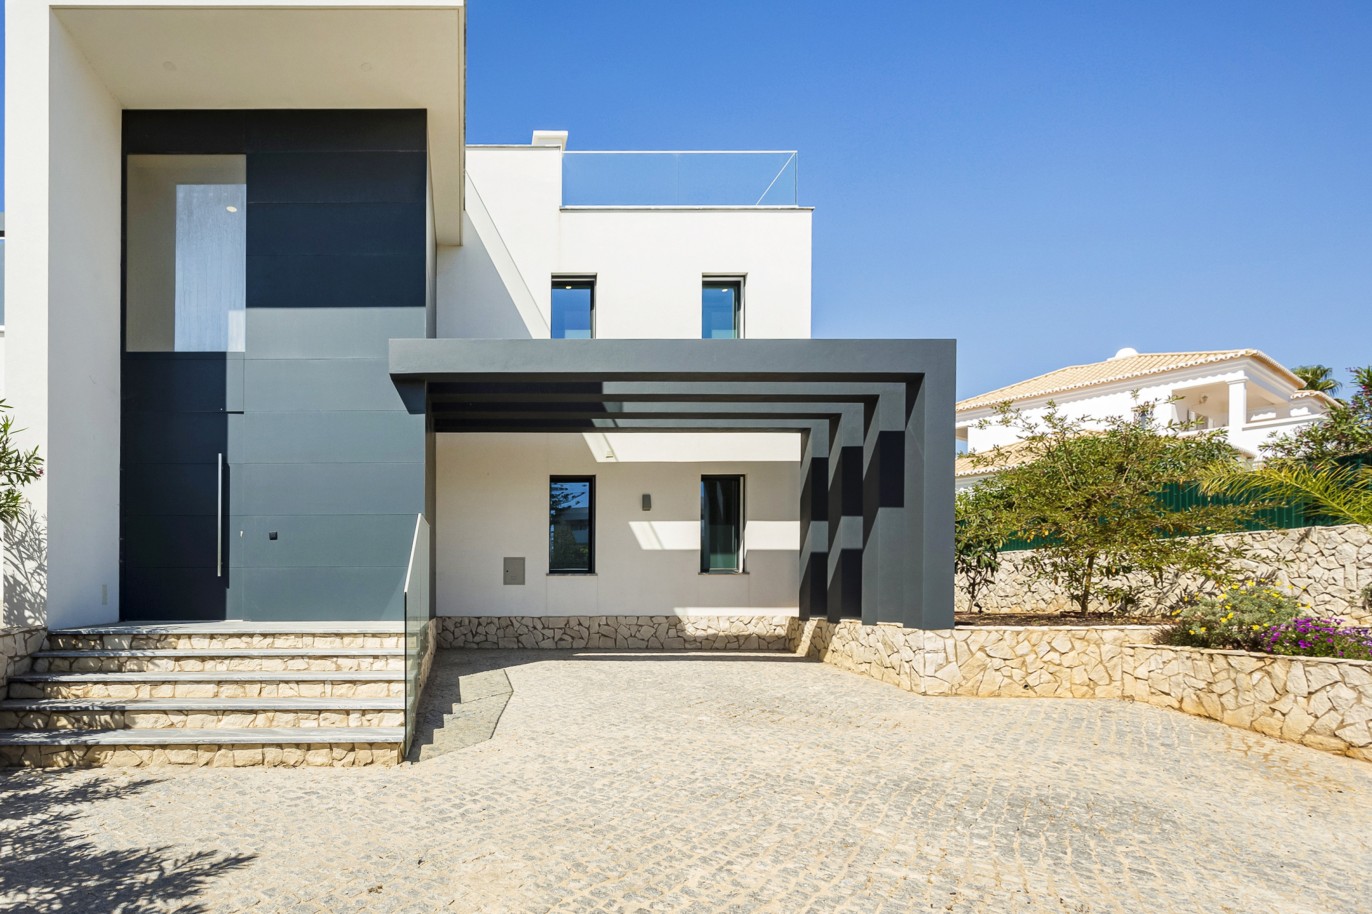 Moradia V4, com piscina, para venda, em Ferragudo, Algarve_222726